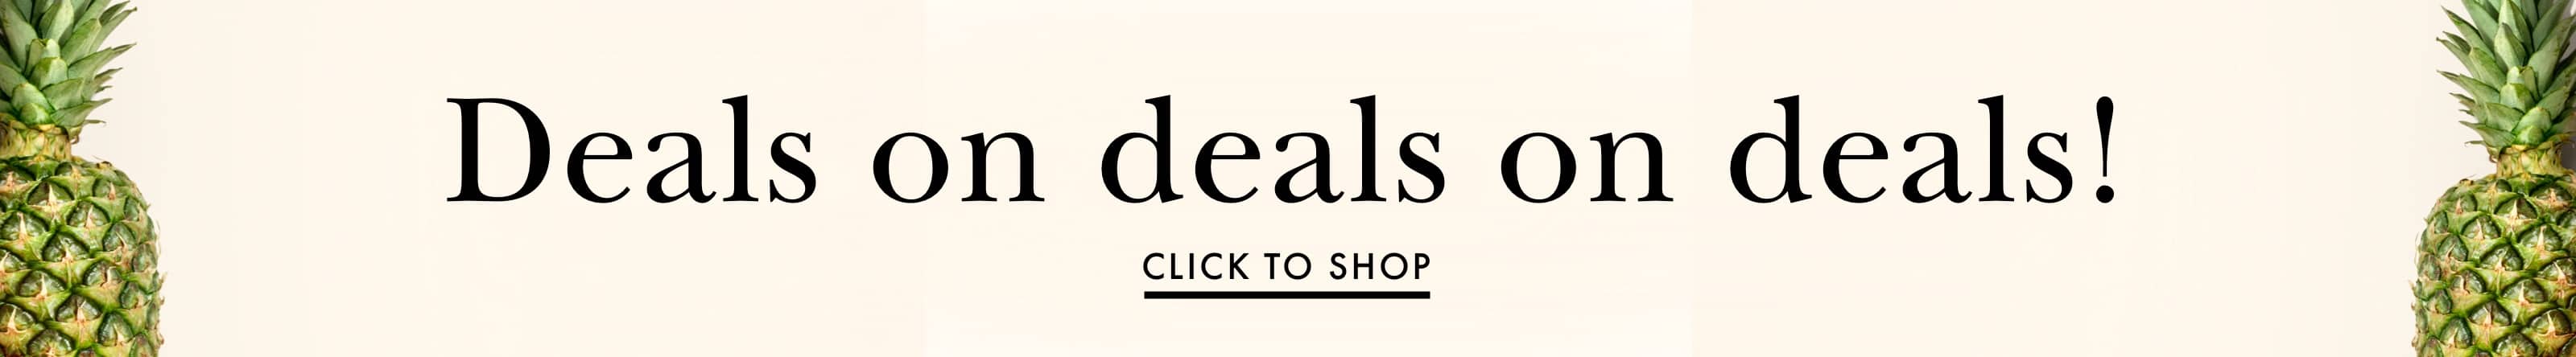 deals on deals on deals! click to shop.